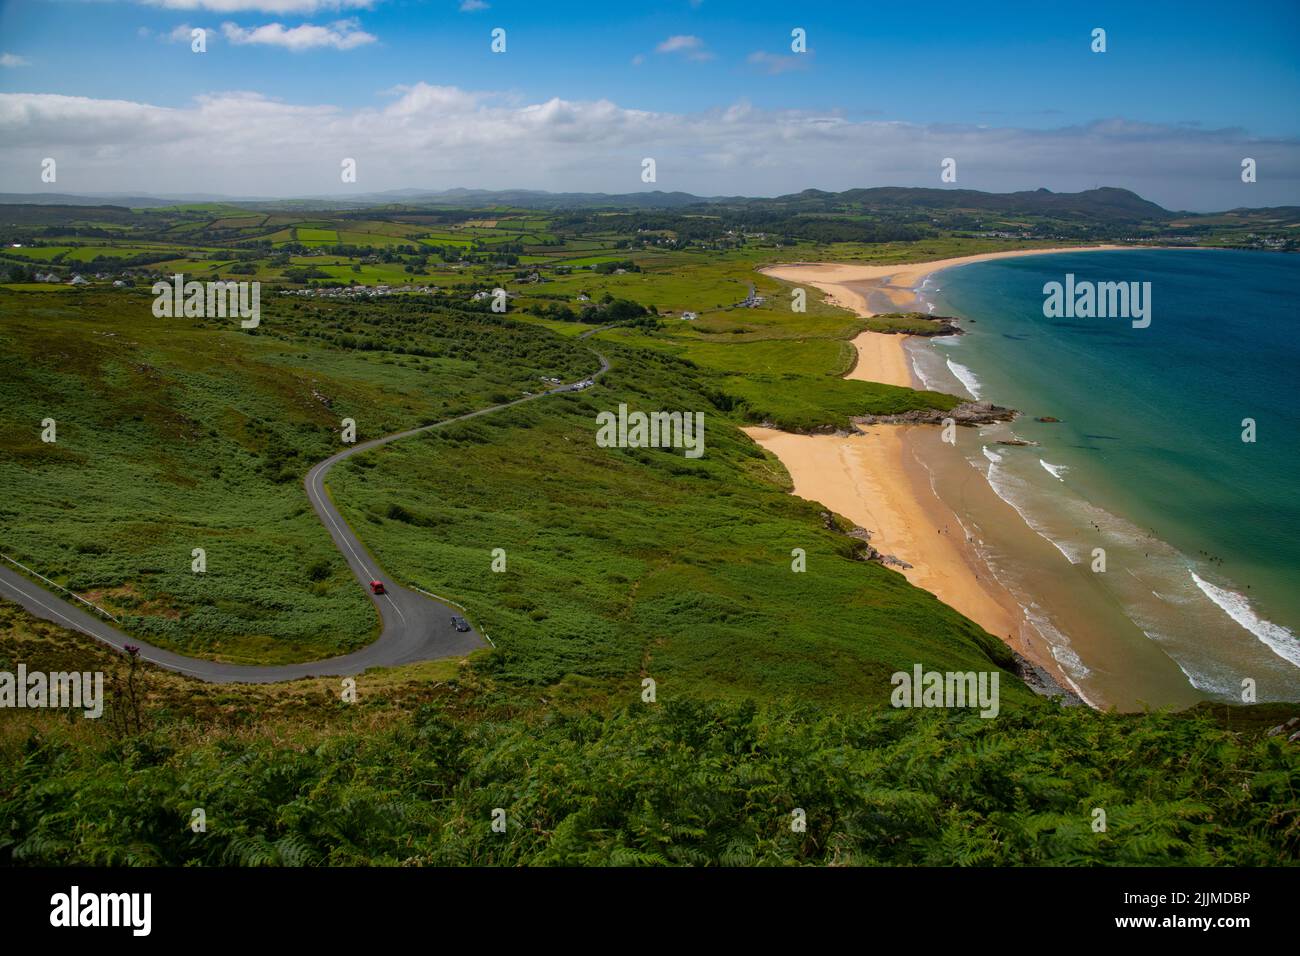 View of Ballymastocker Bay, Portsalon, Fanad, County Donegal, Ireland Stock Photo